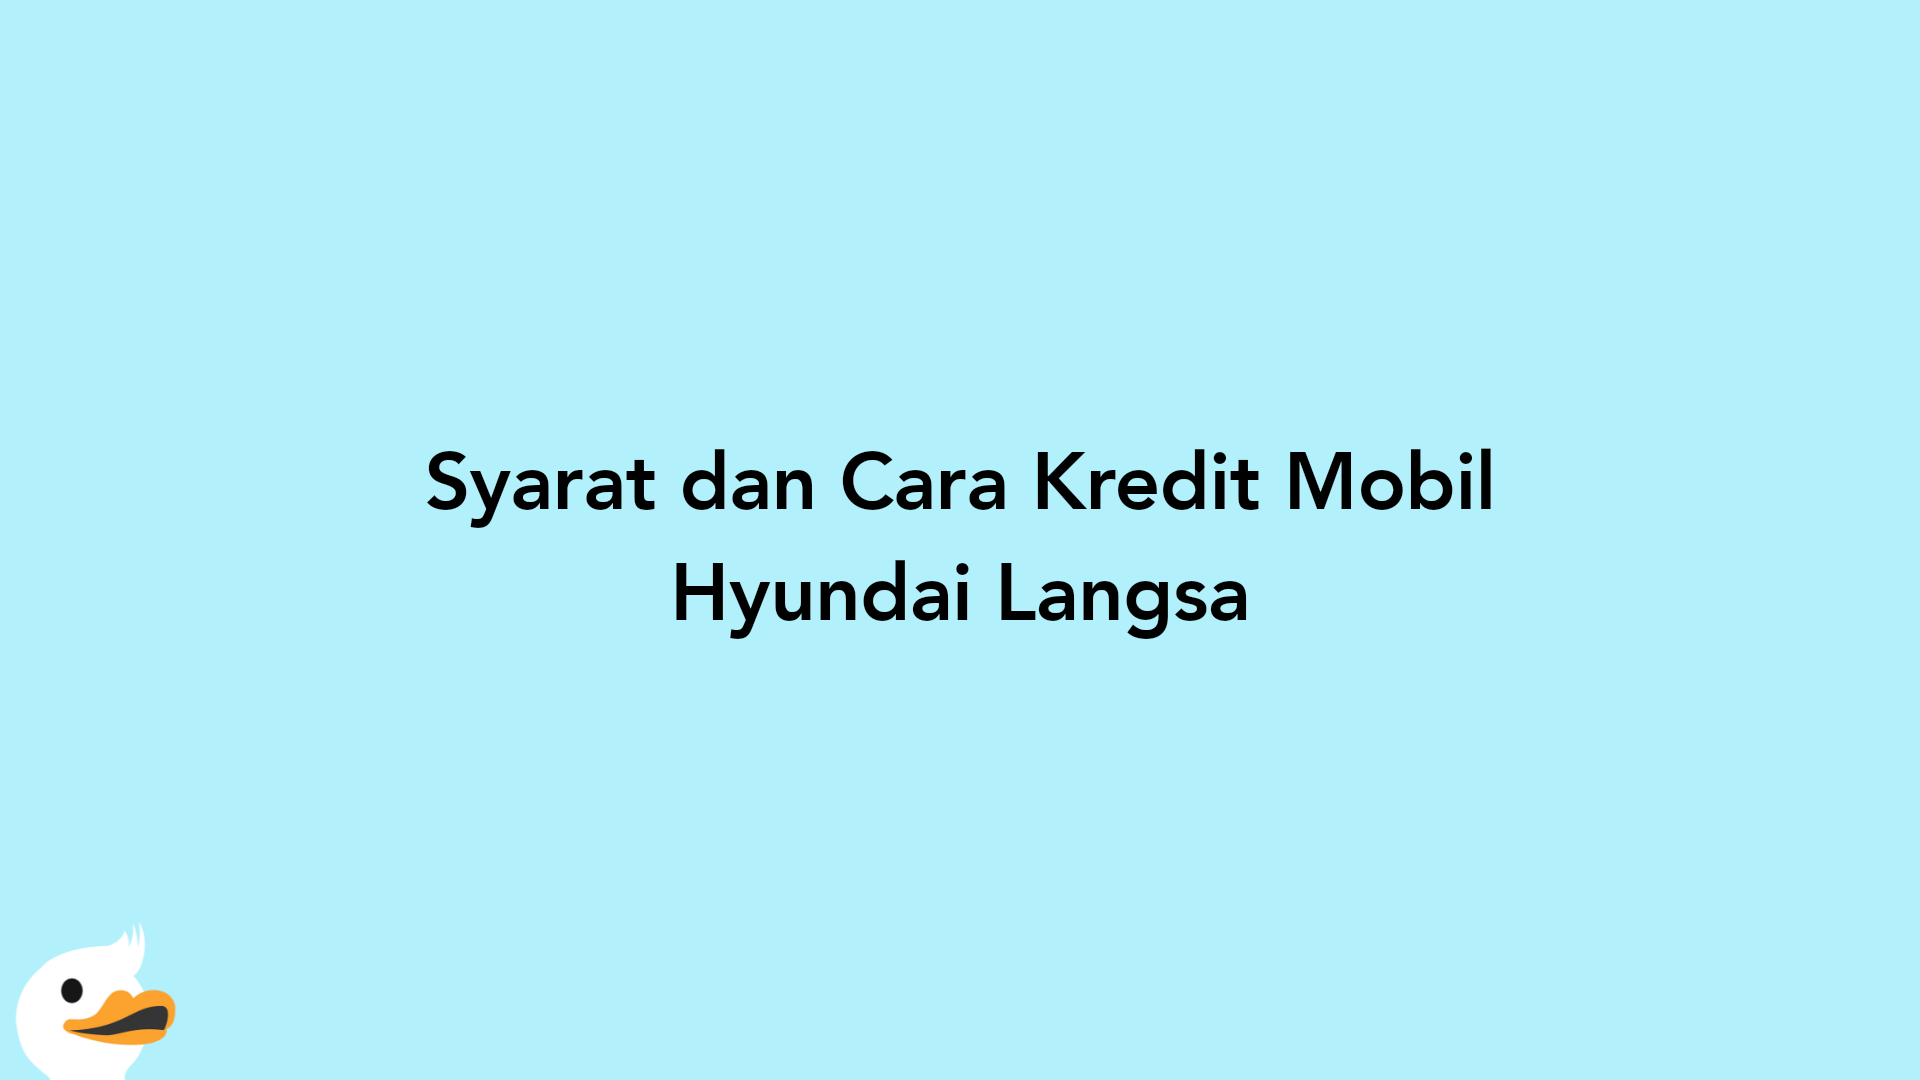 Syarat dan Cara Kredit Mobil Hyundai Langsa